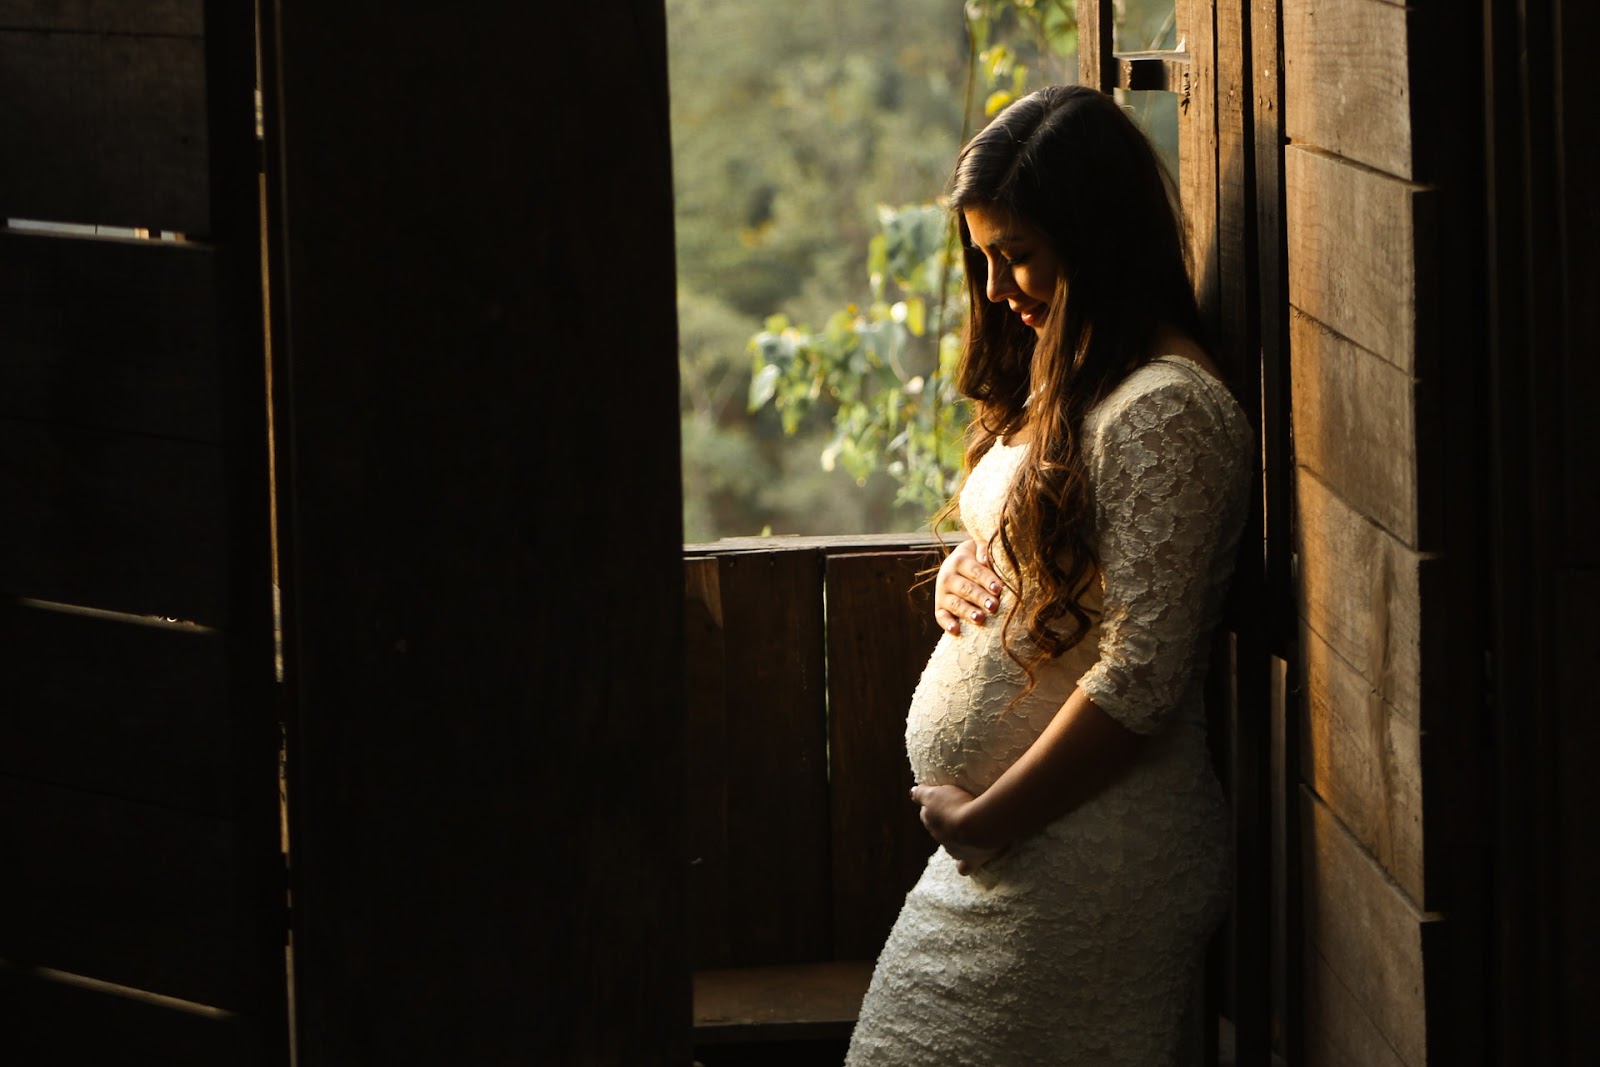 Fotografía de embarazadas: también puedes utilizar algunos de los recursos usados en fotografía newborn